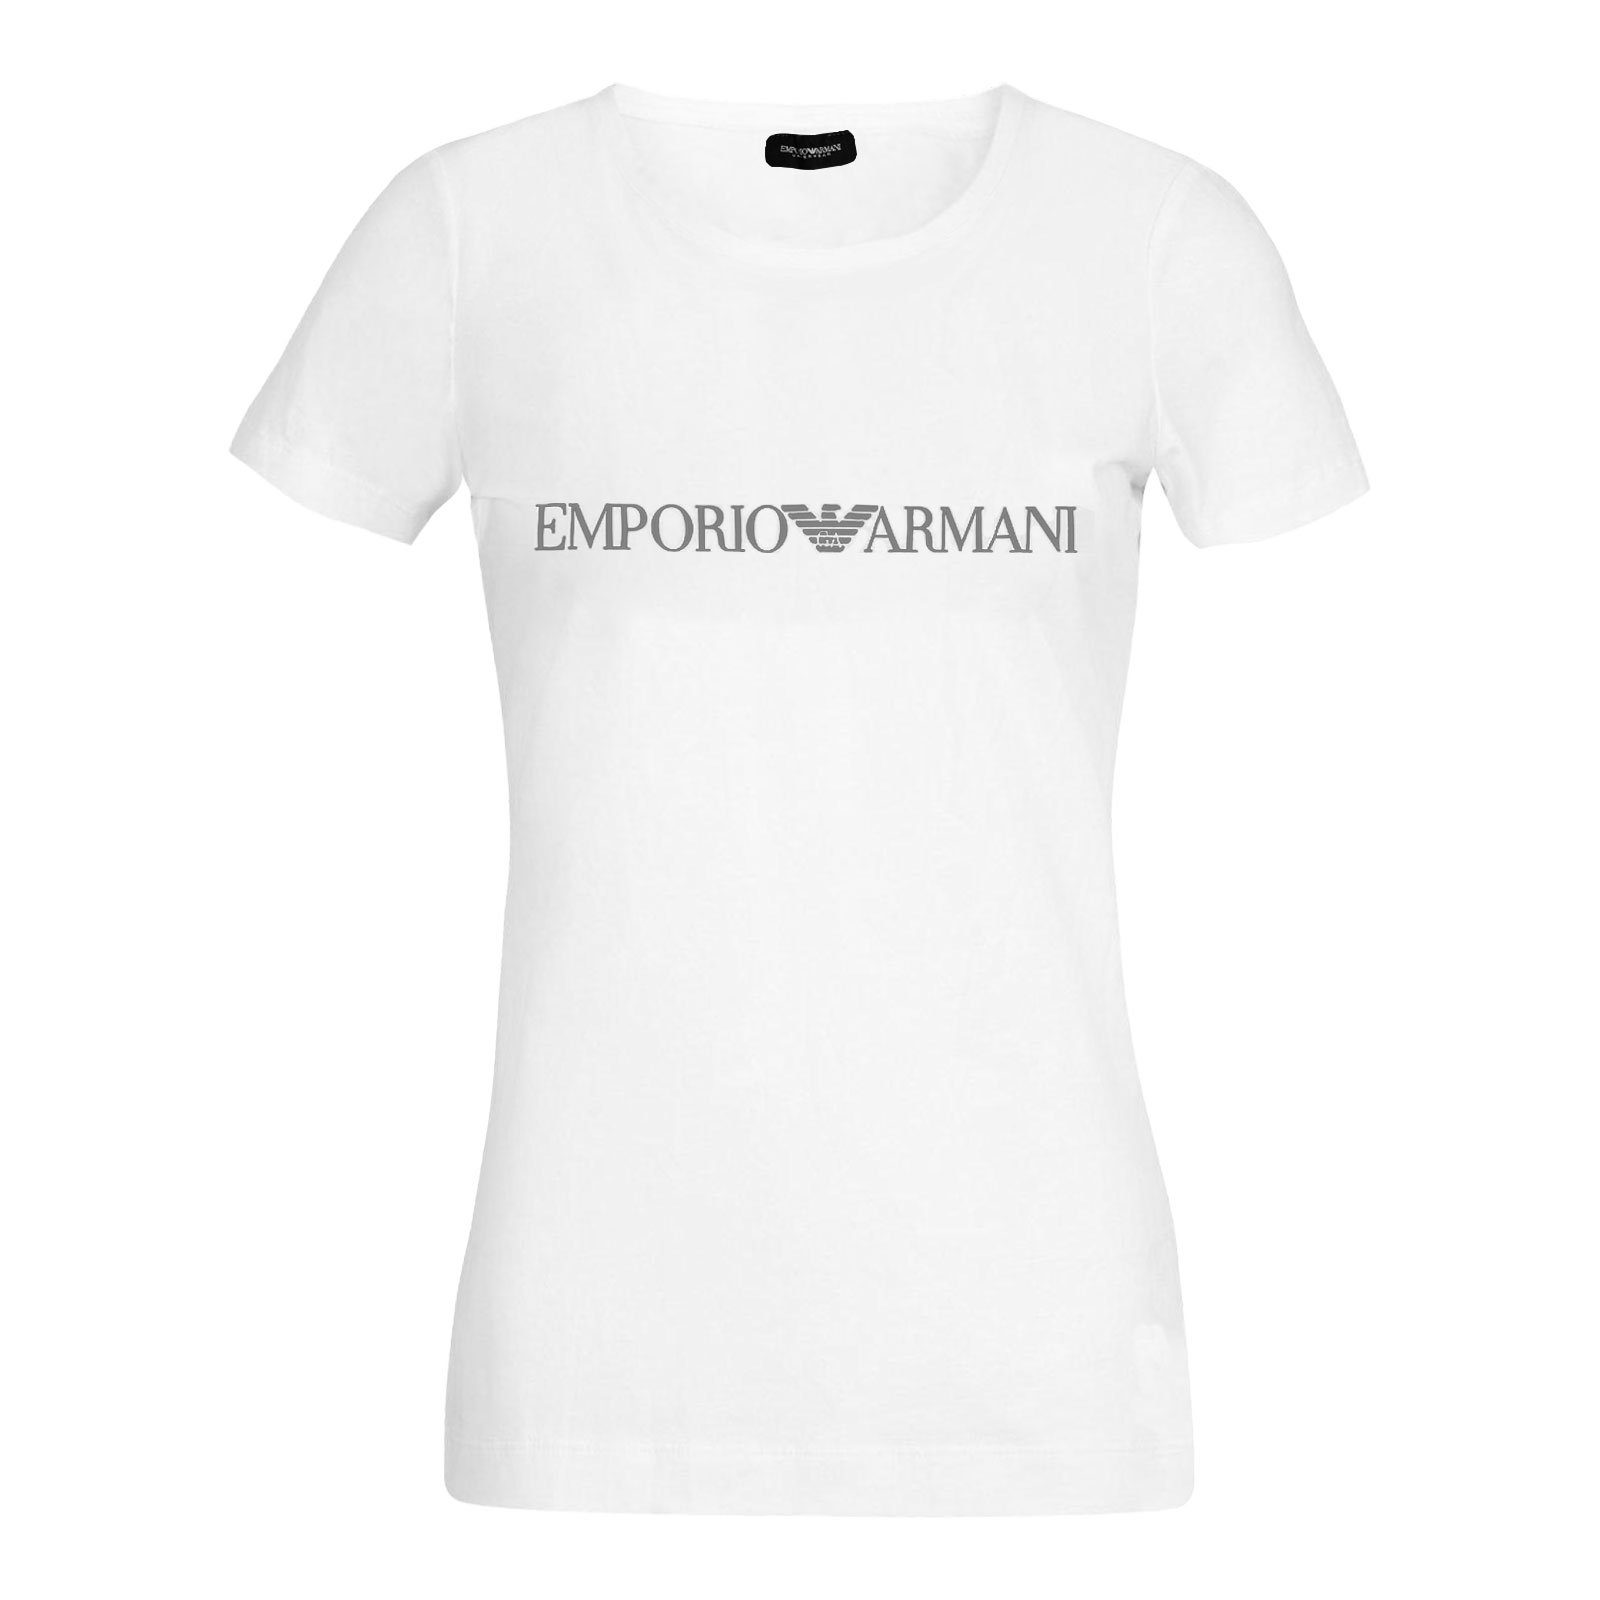 Emporio Armani T-Shirt Loungewear-Shirt 00010 Markenschriftzug Brust Round auf Neck white der mit